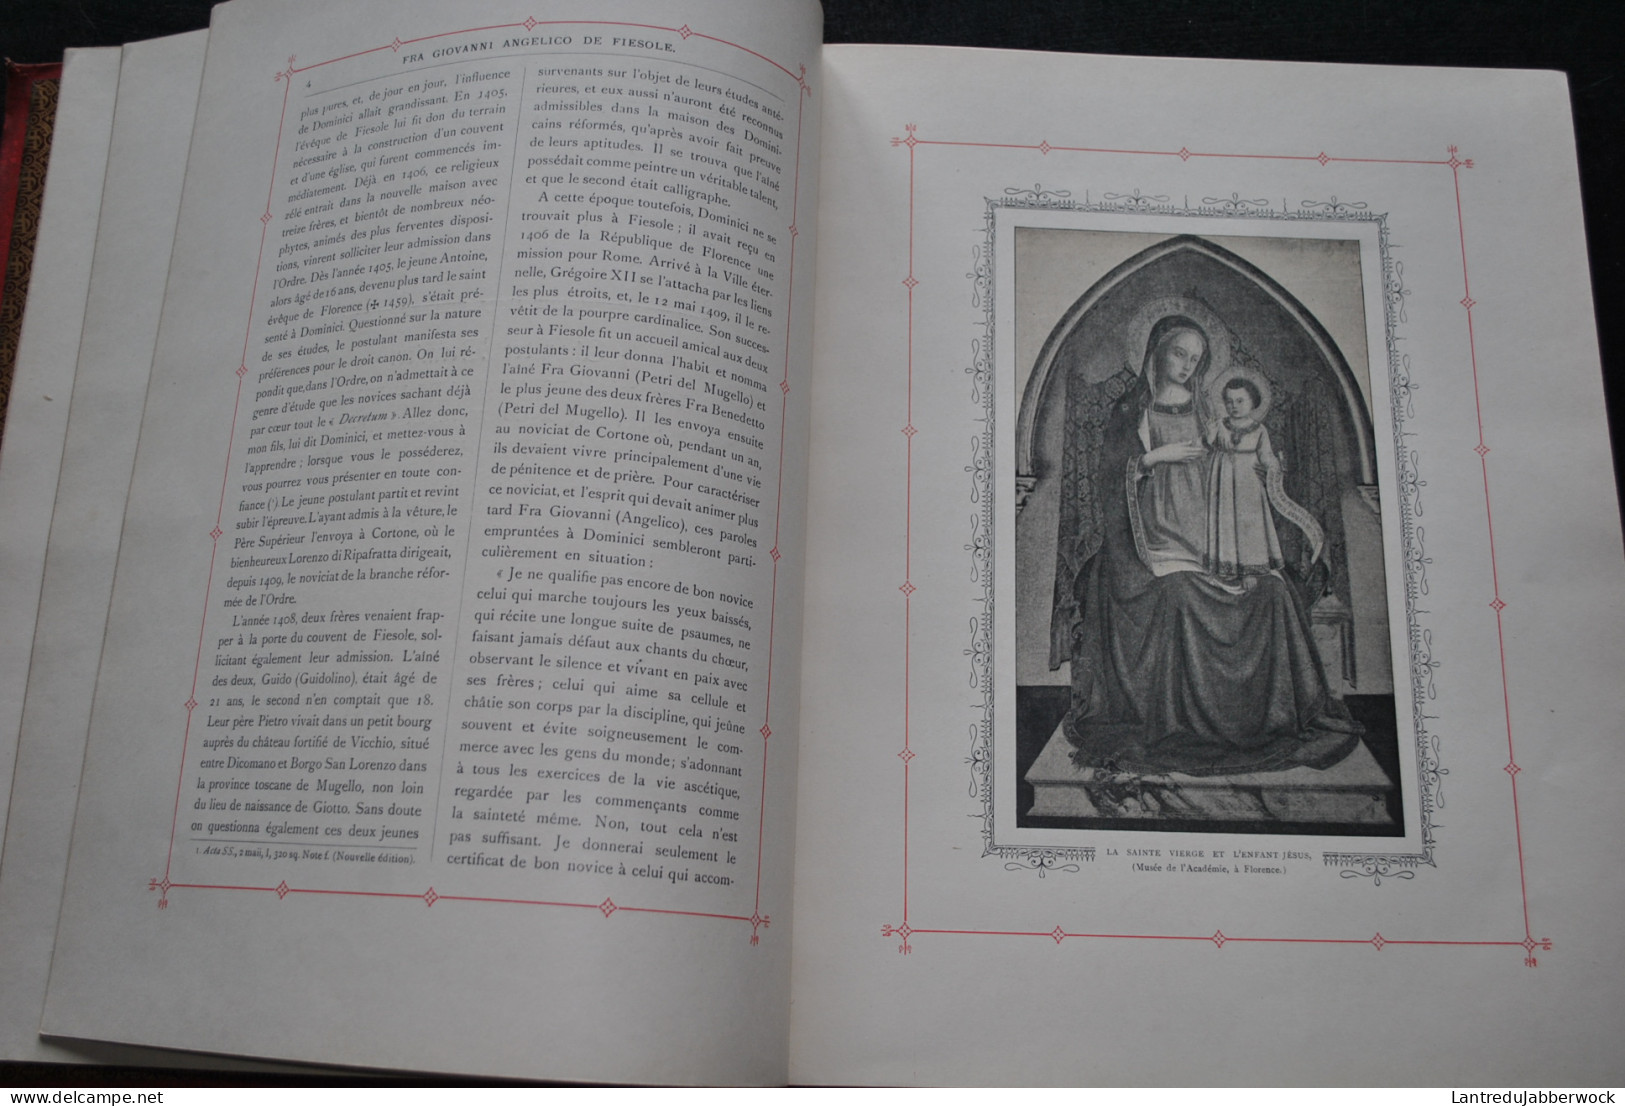  BEISSEL Fra Angelico de Fiesole sa vie et ses travaux traduit de l'allemand et précédé d'une introduction par J. Helbig